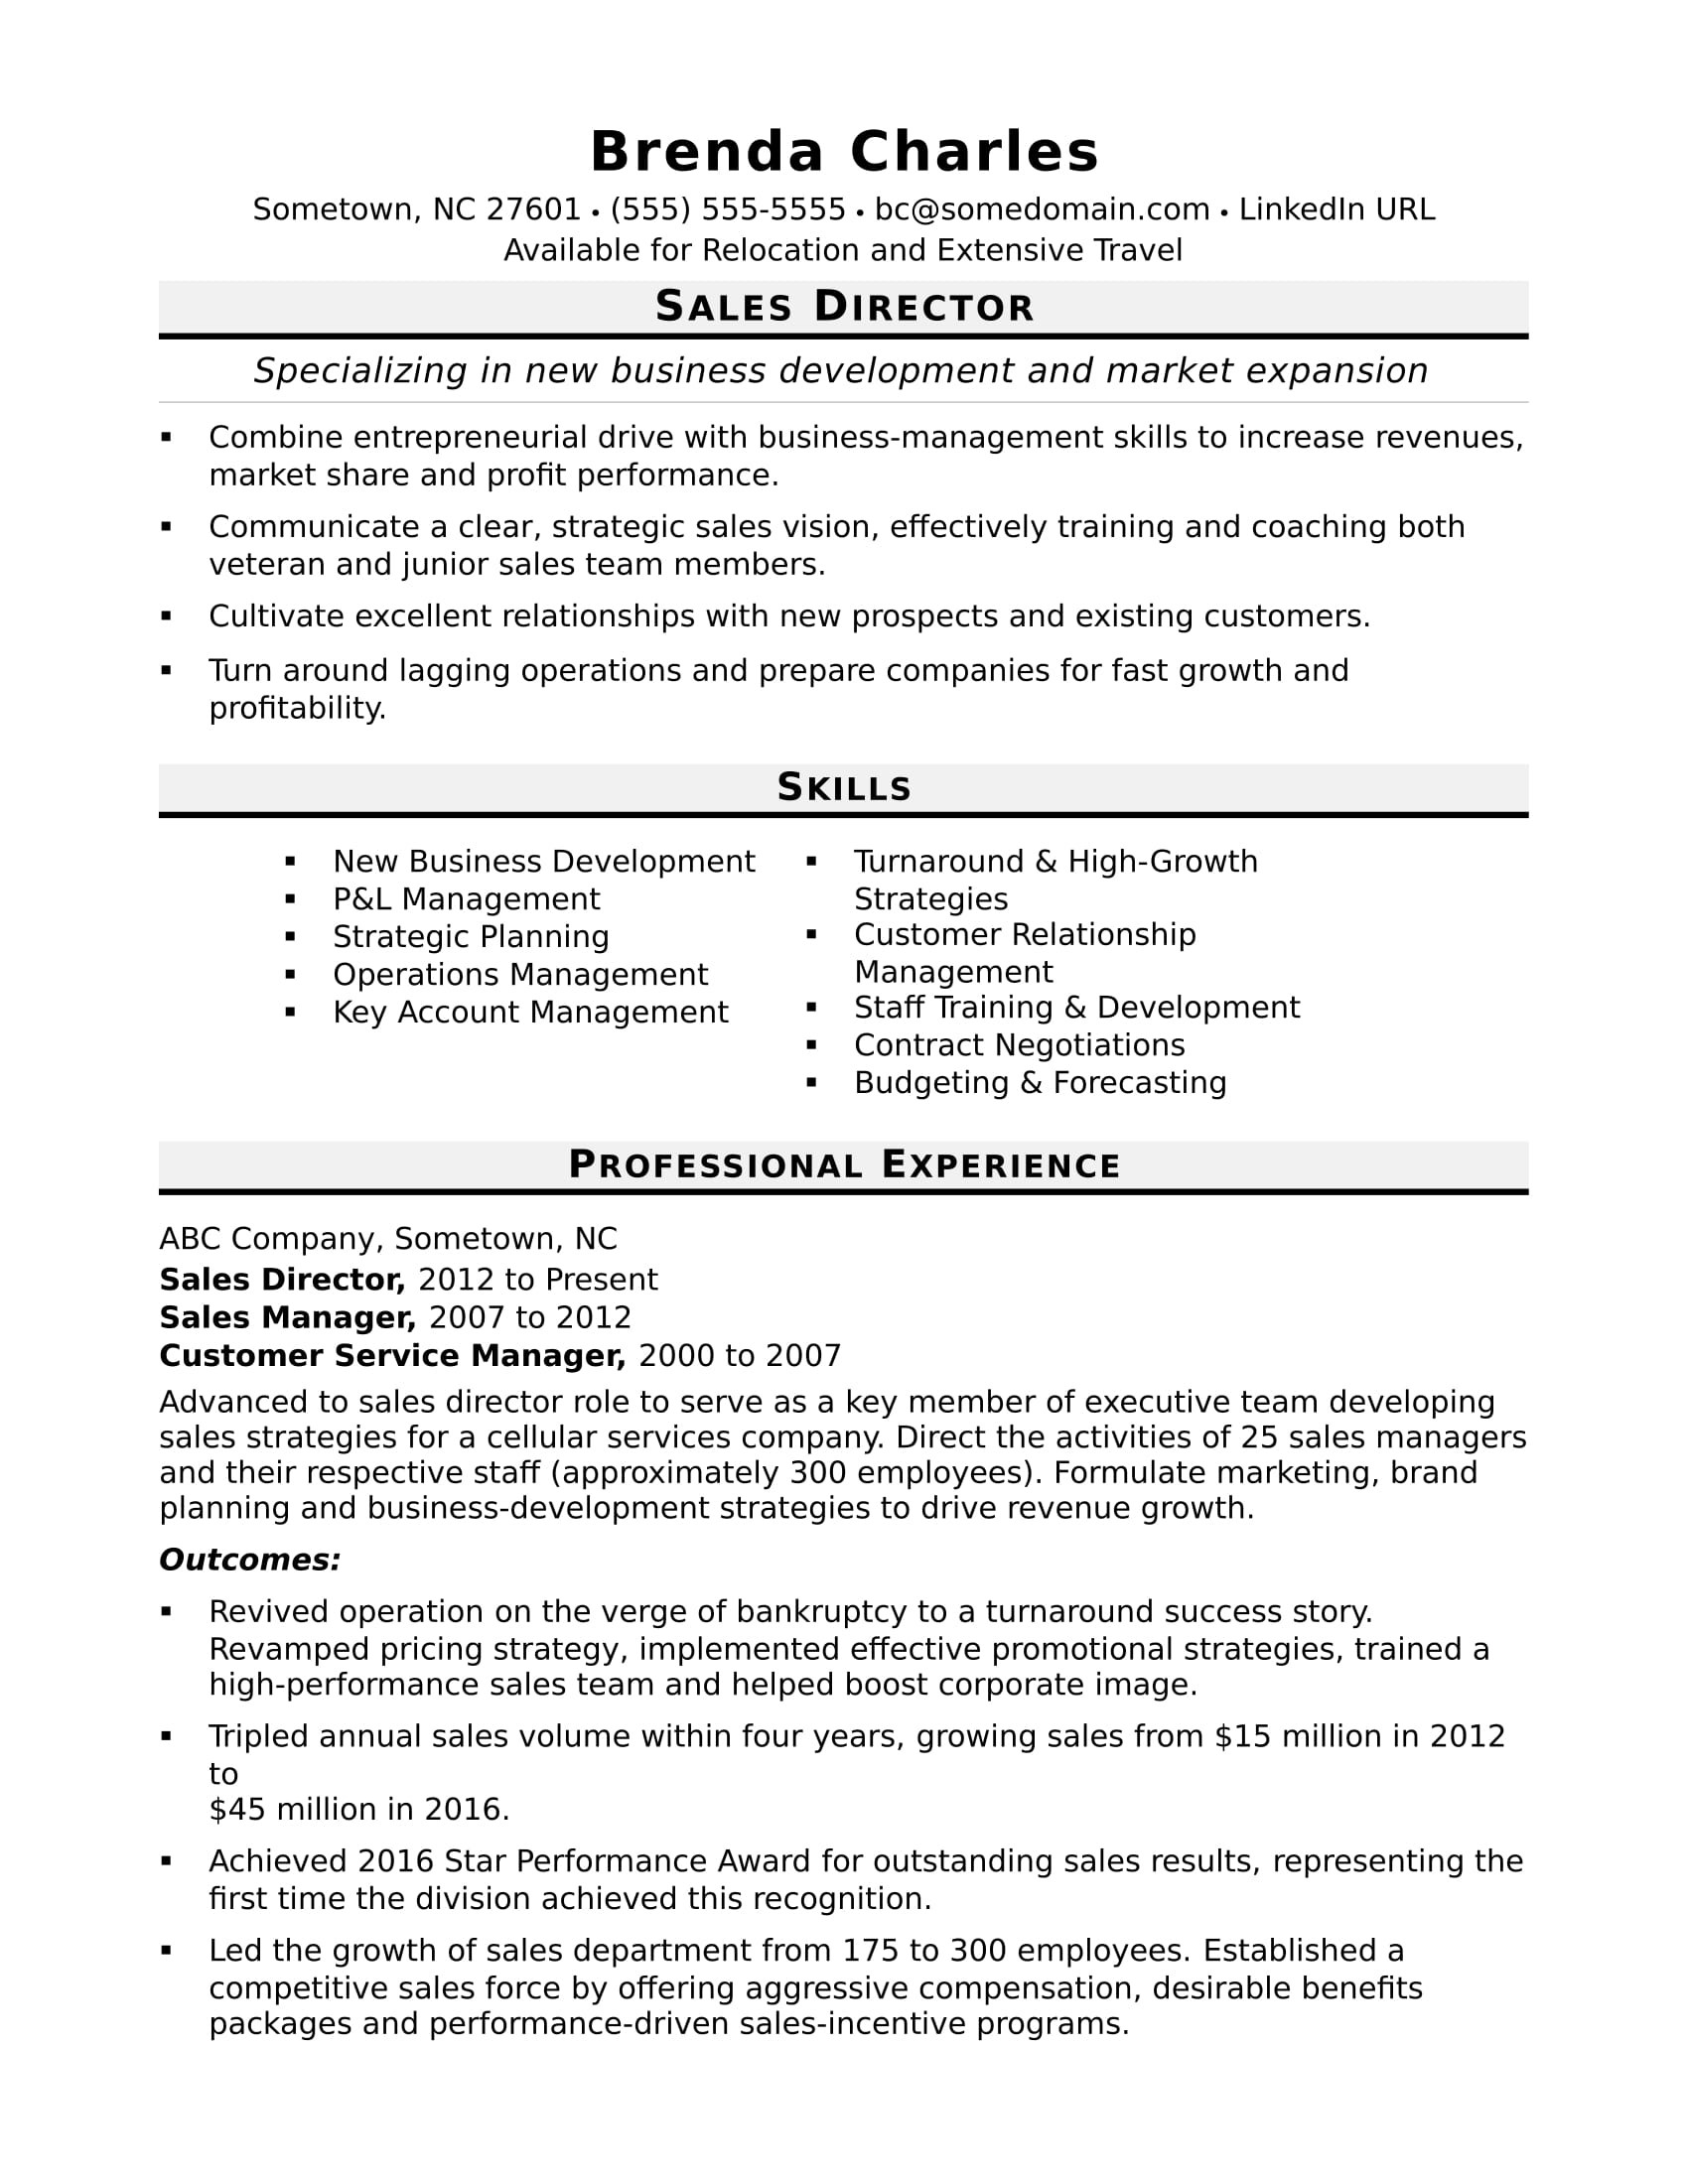 Sample Resume Headline for Sales Manager Sales Director Resume Sample Monster.com